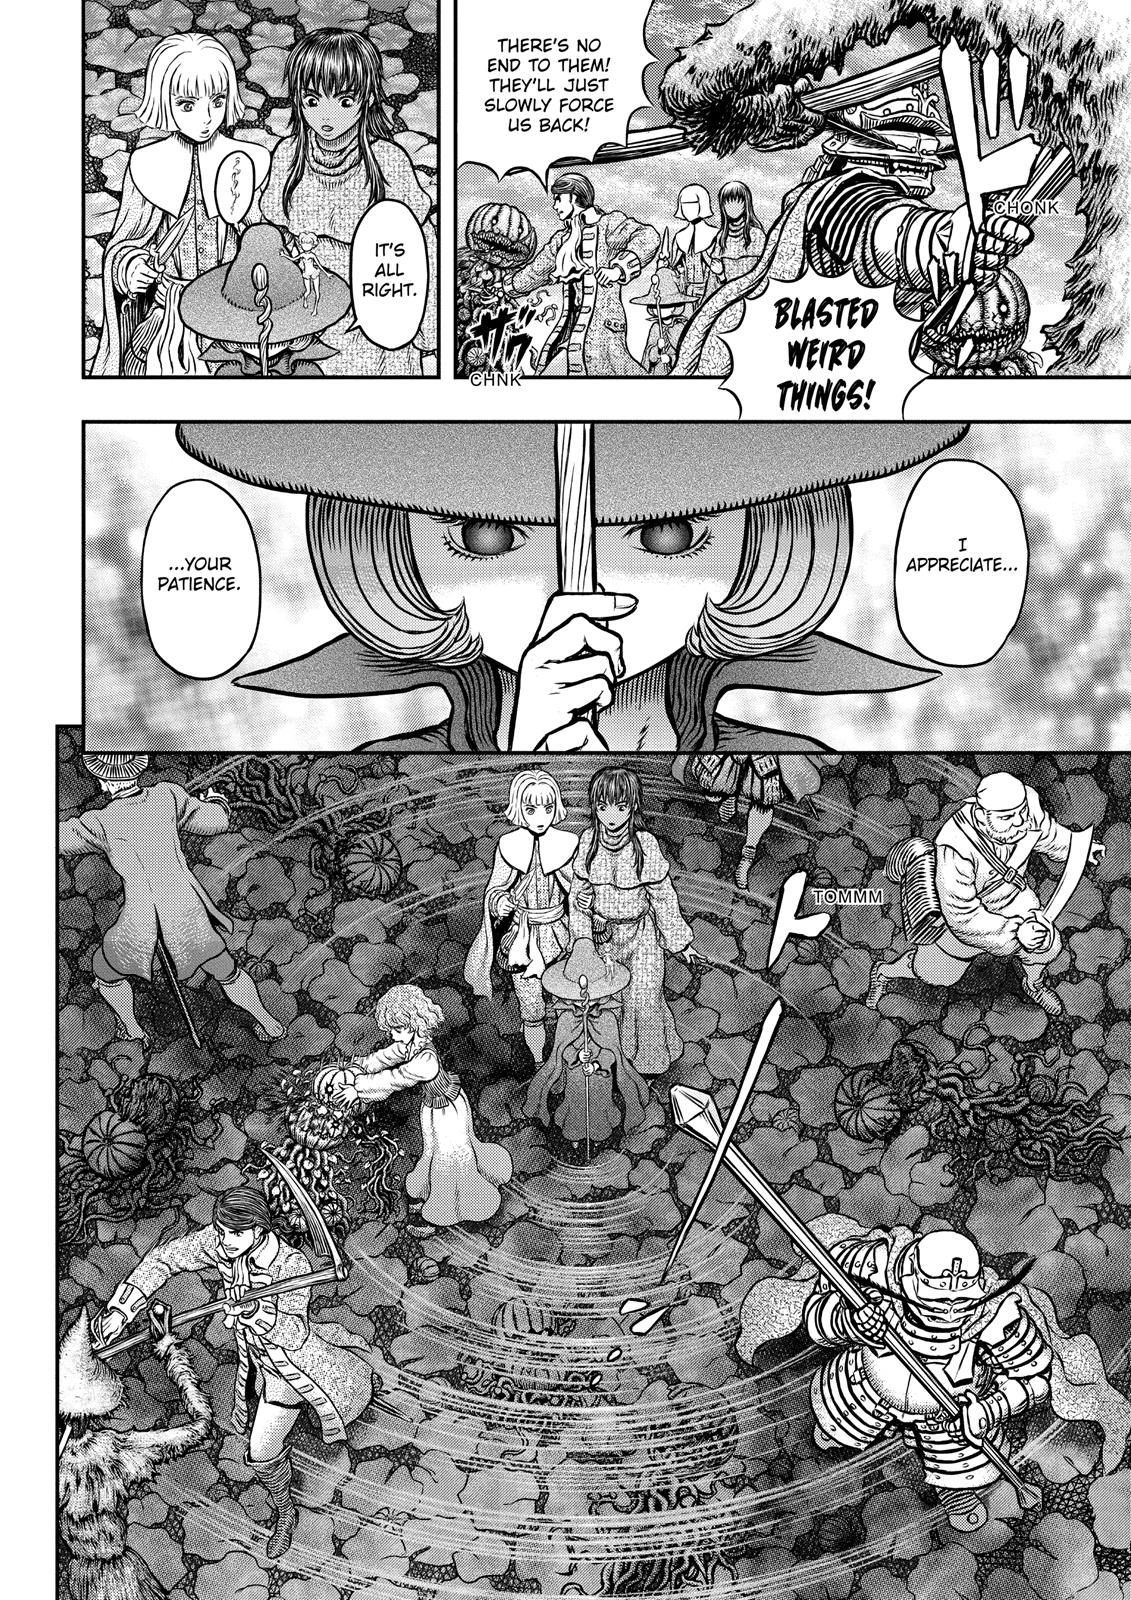 Berserk Manga Chapter 343 image 19